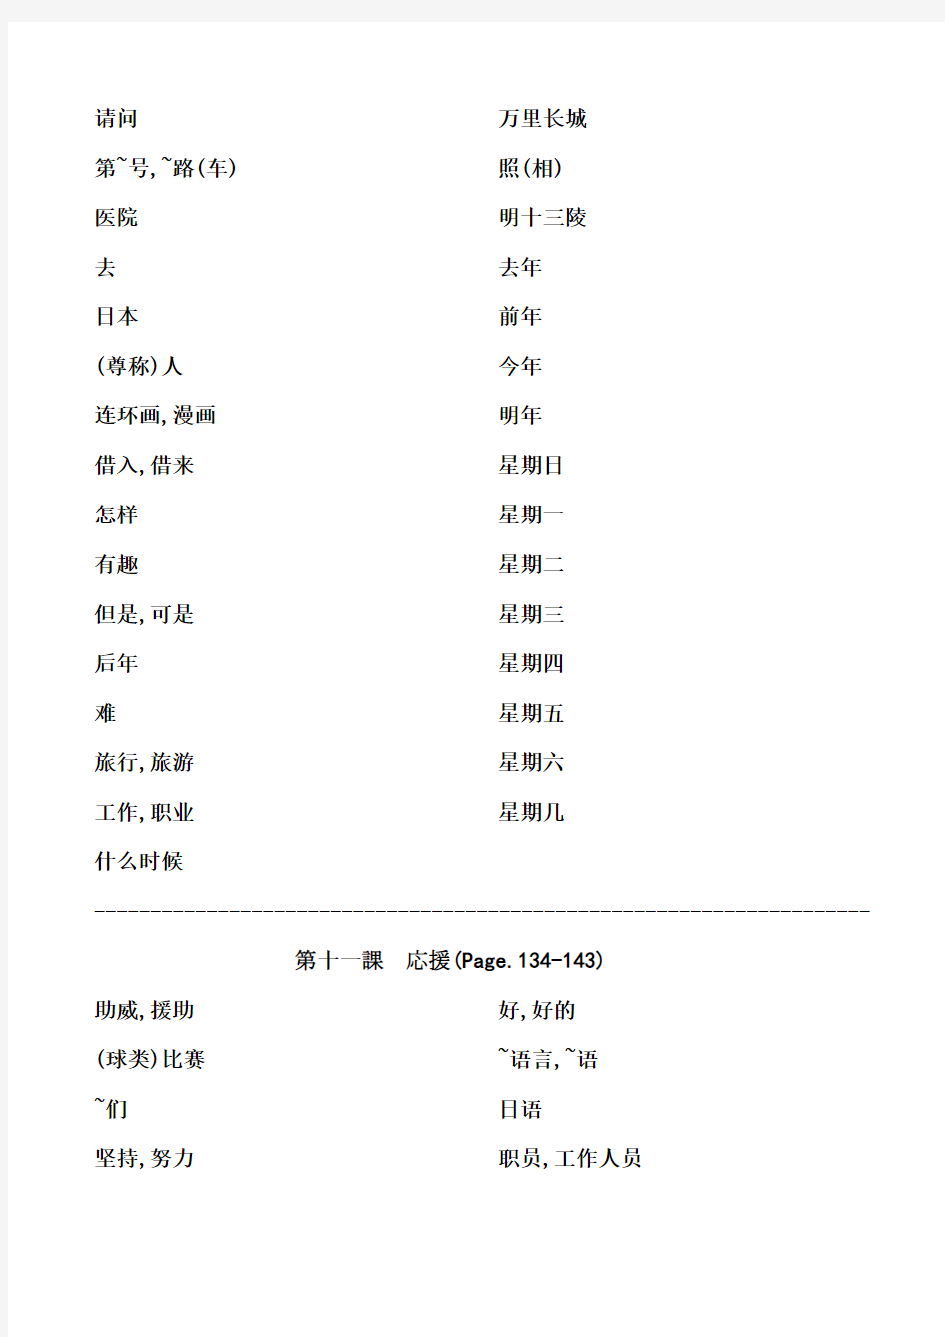 人教版日语七年级单词9-12